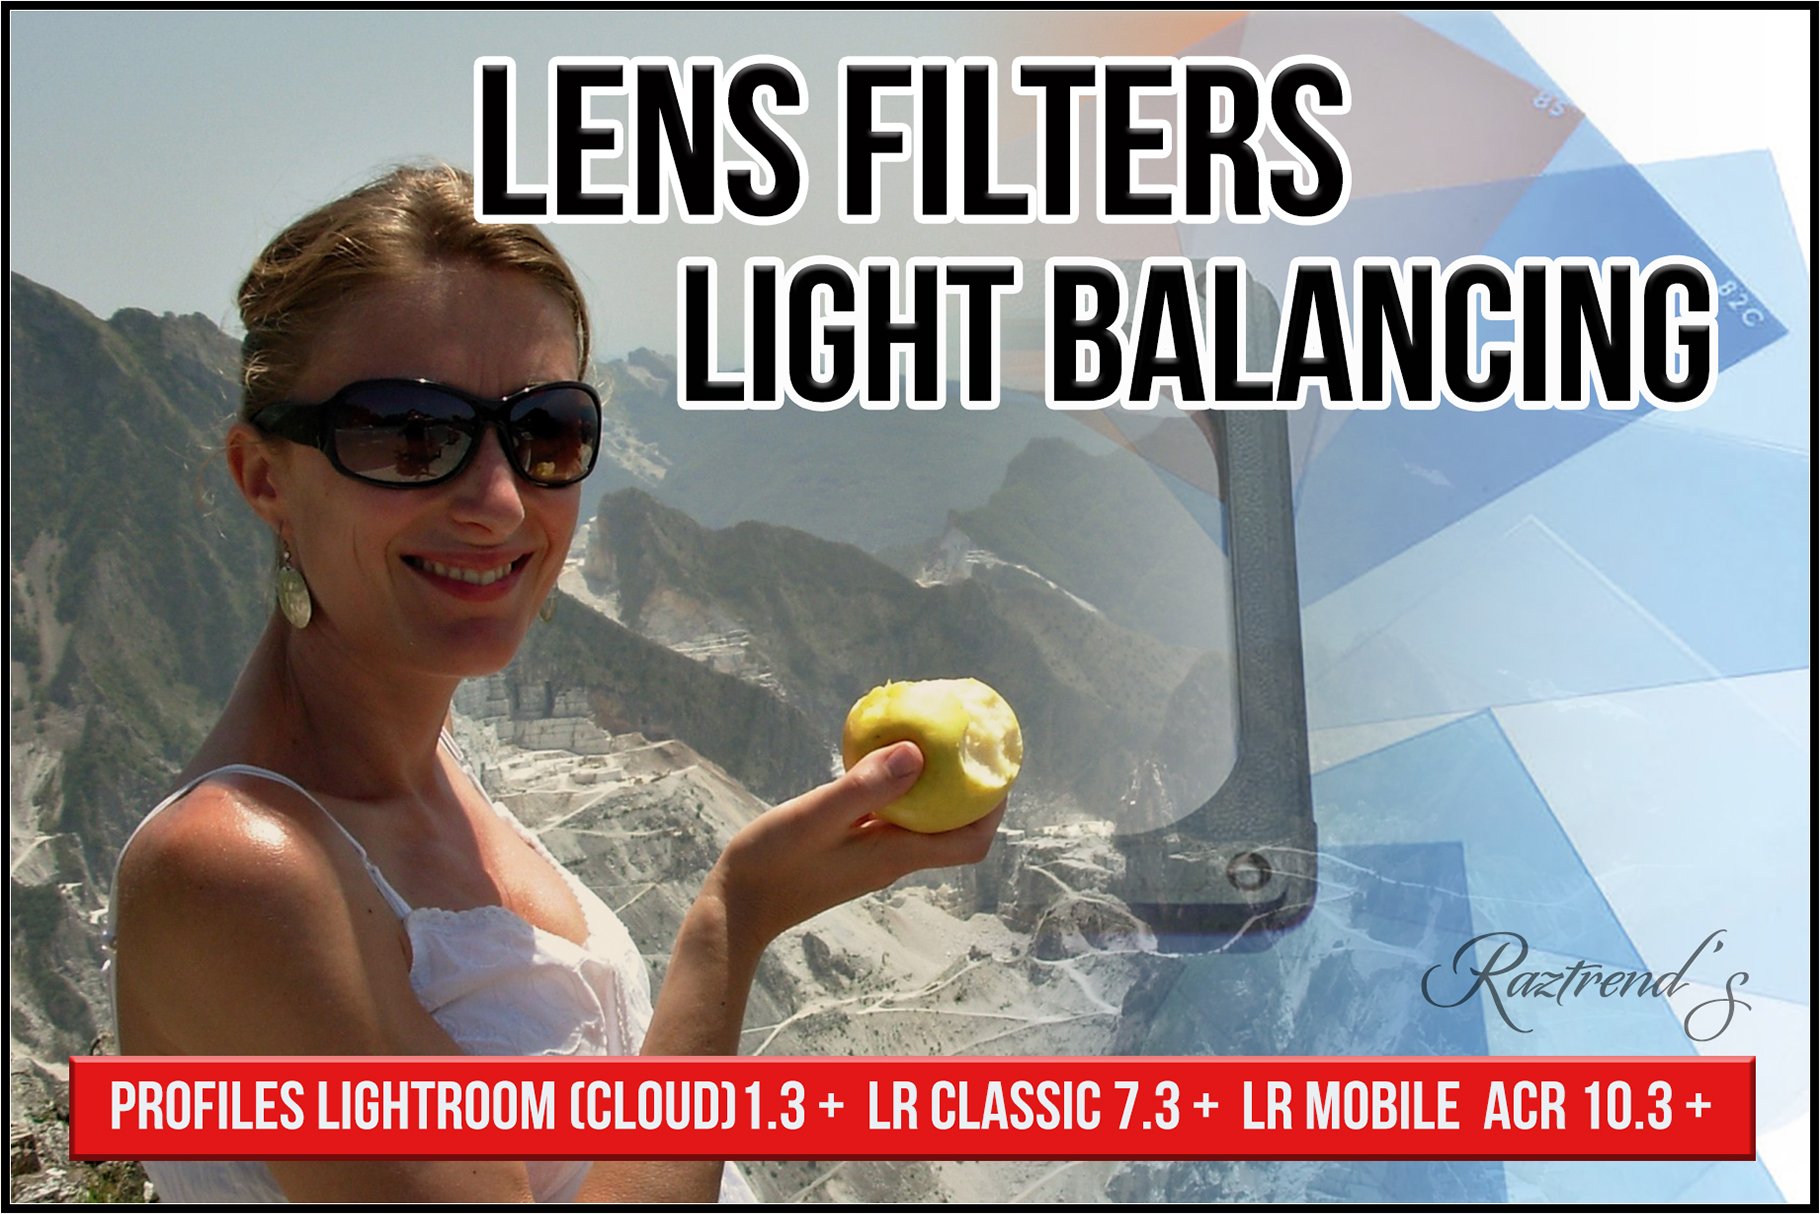 Lens Light Balancing Filterscover image.